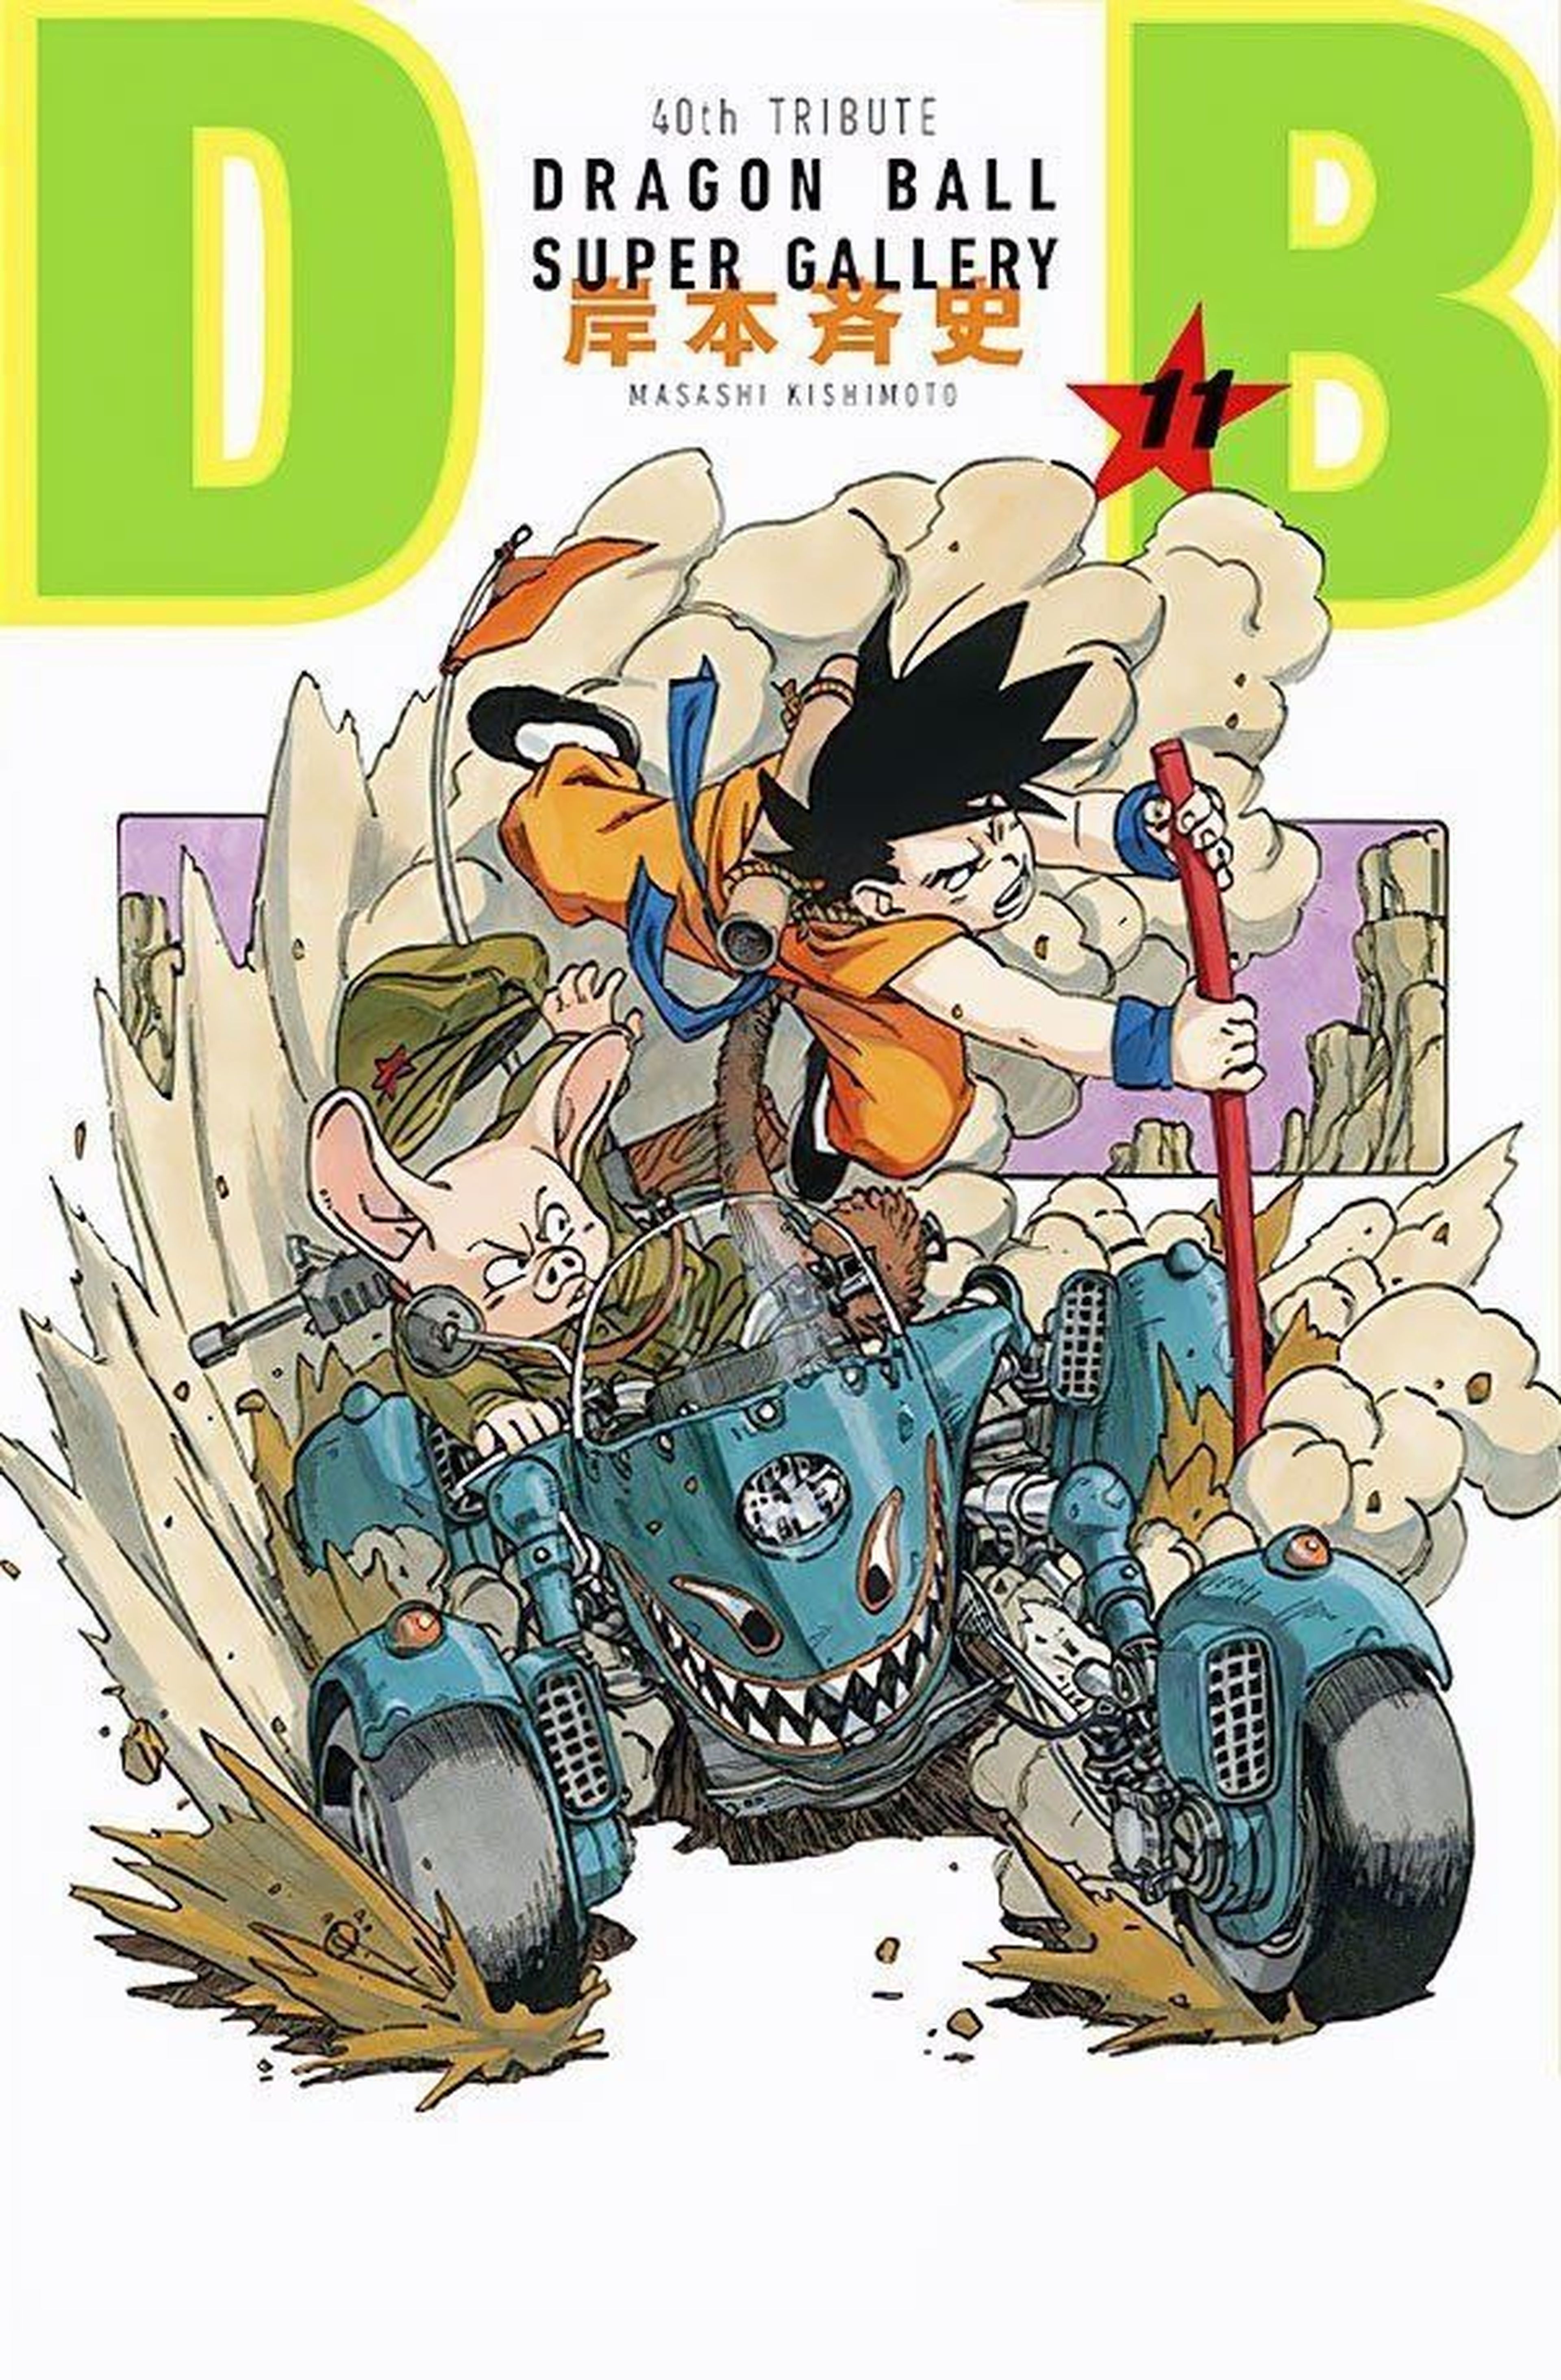 Dragon Ball - Masashi Kishimoto, autor de Naruto, recrea una de las portadas originales de la serie de Akira Toriyama